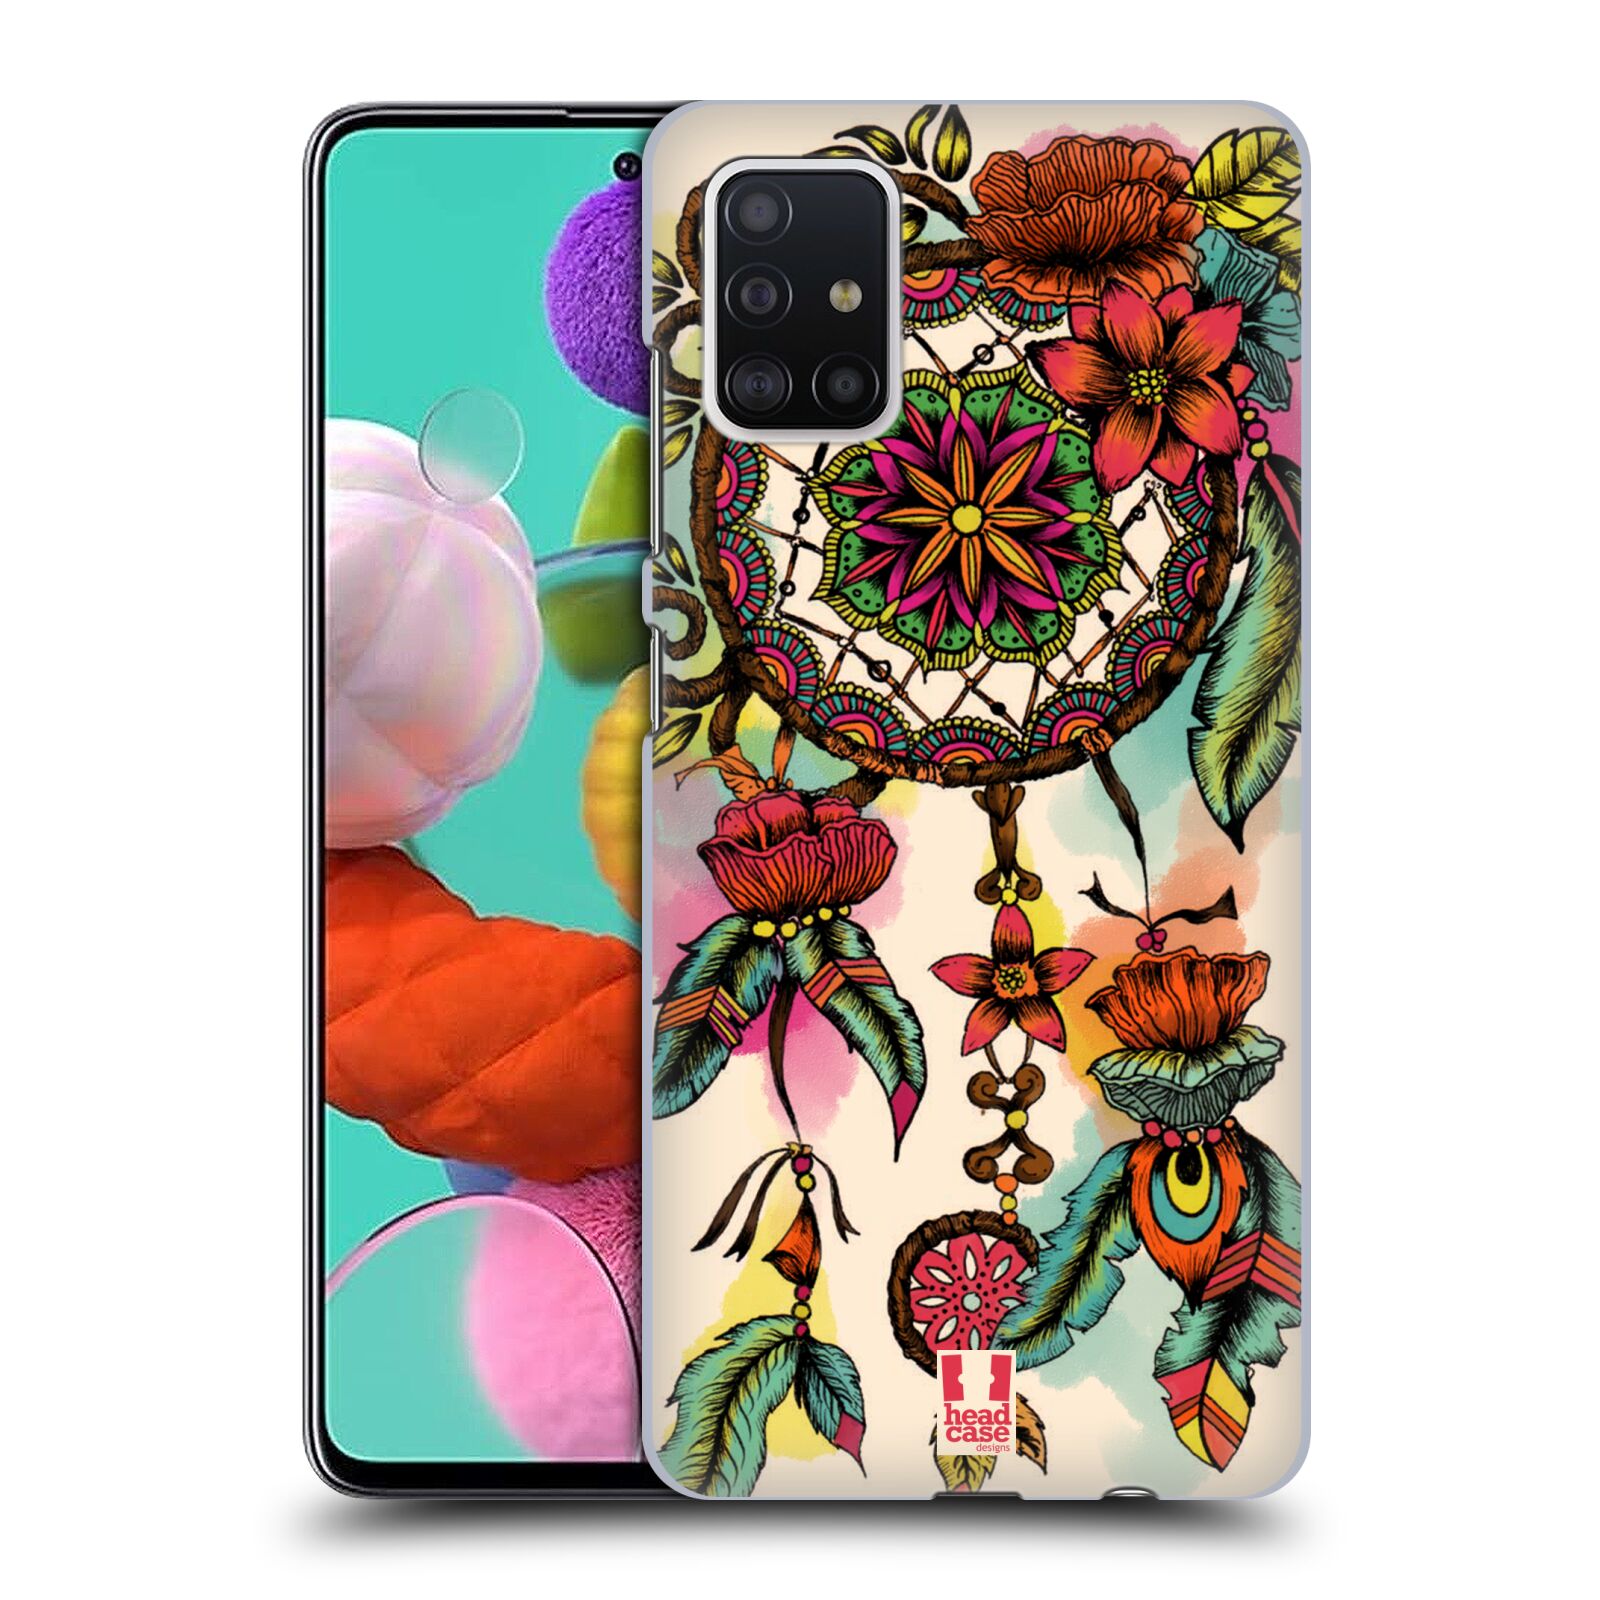 Pouzdro na mobil Samsung Galaxy A51 - HEAD CASE - vzor Květy lapač snů FLORID